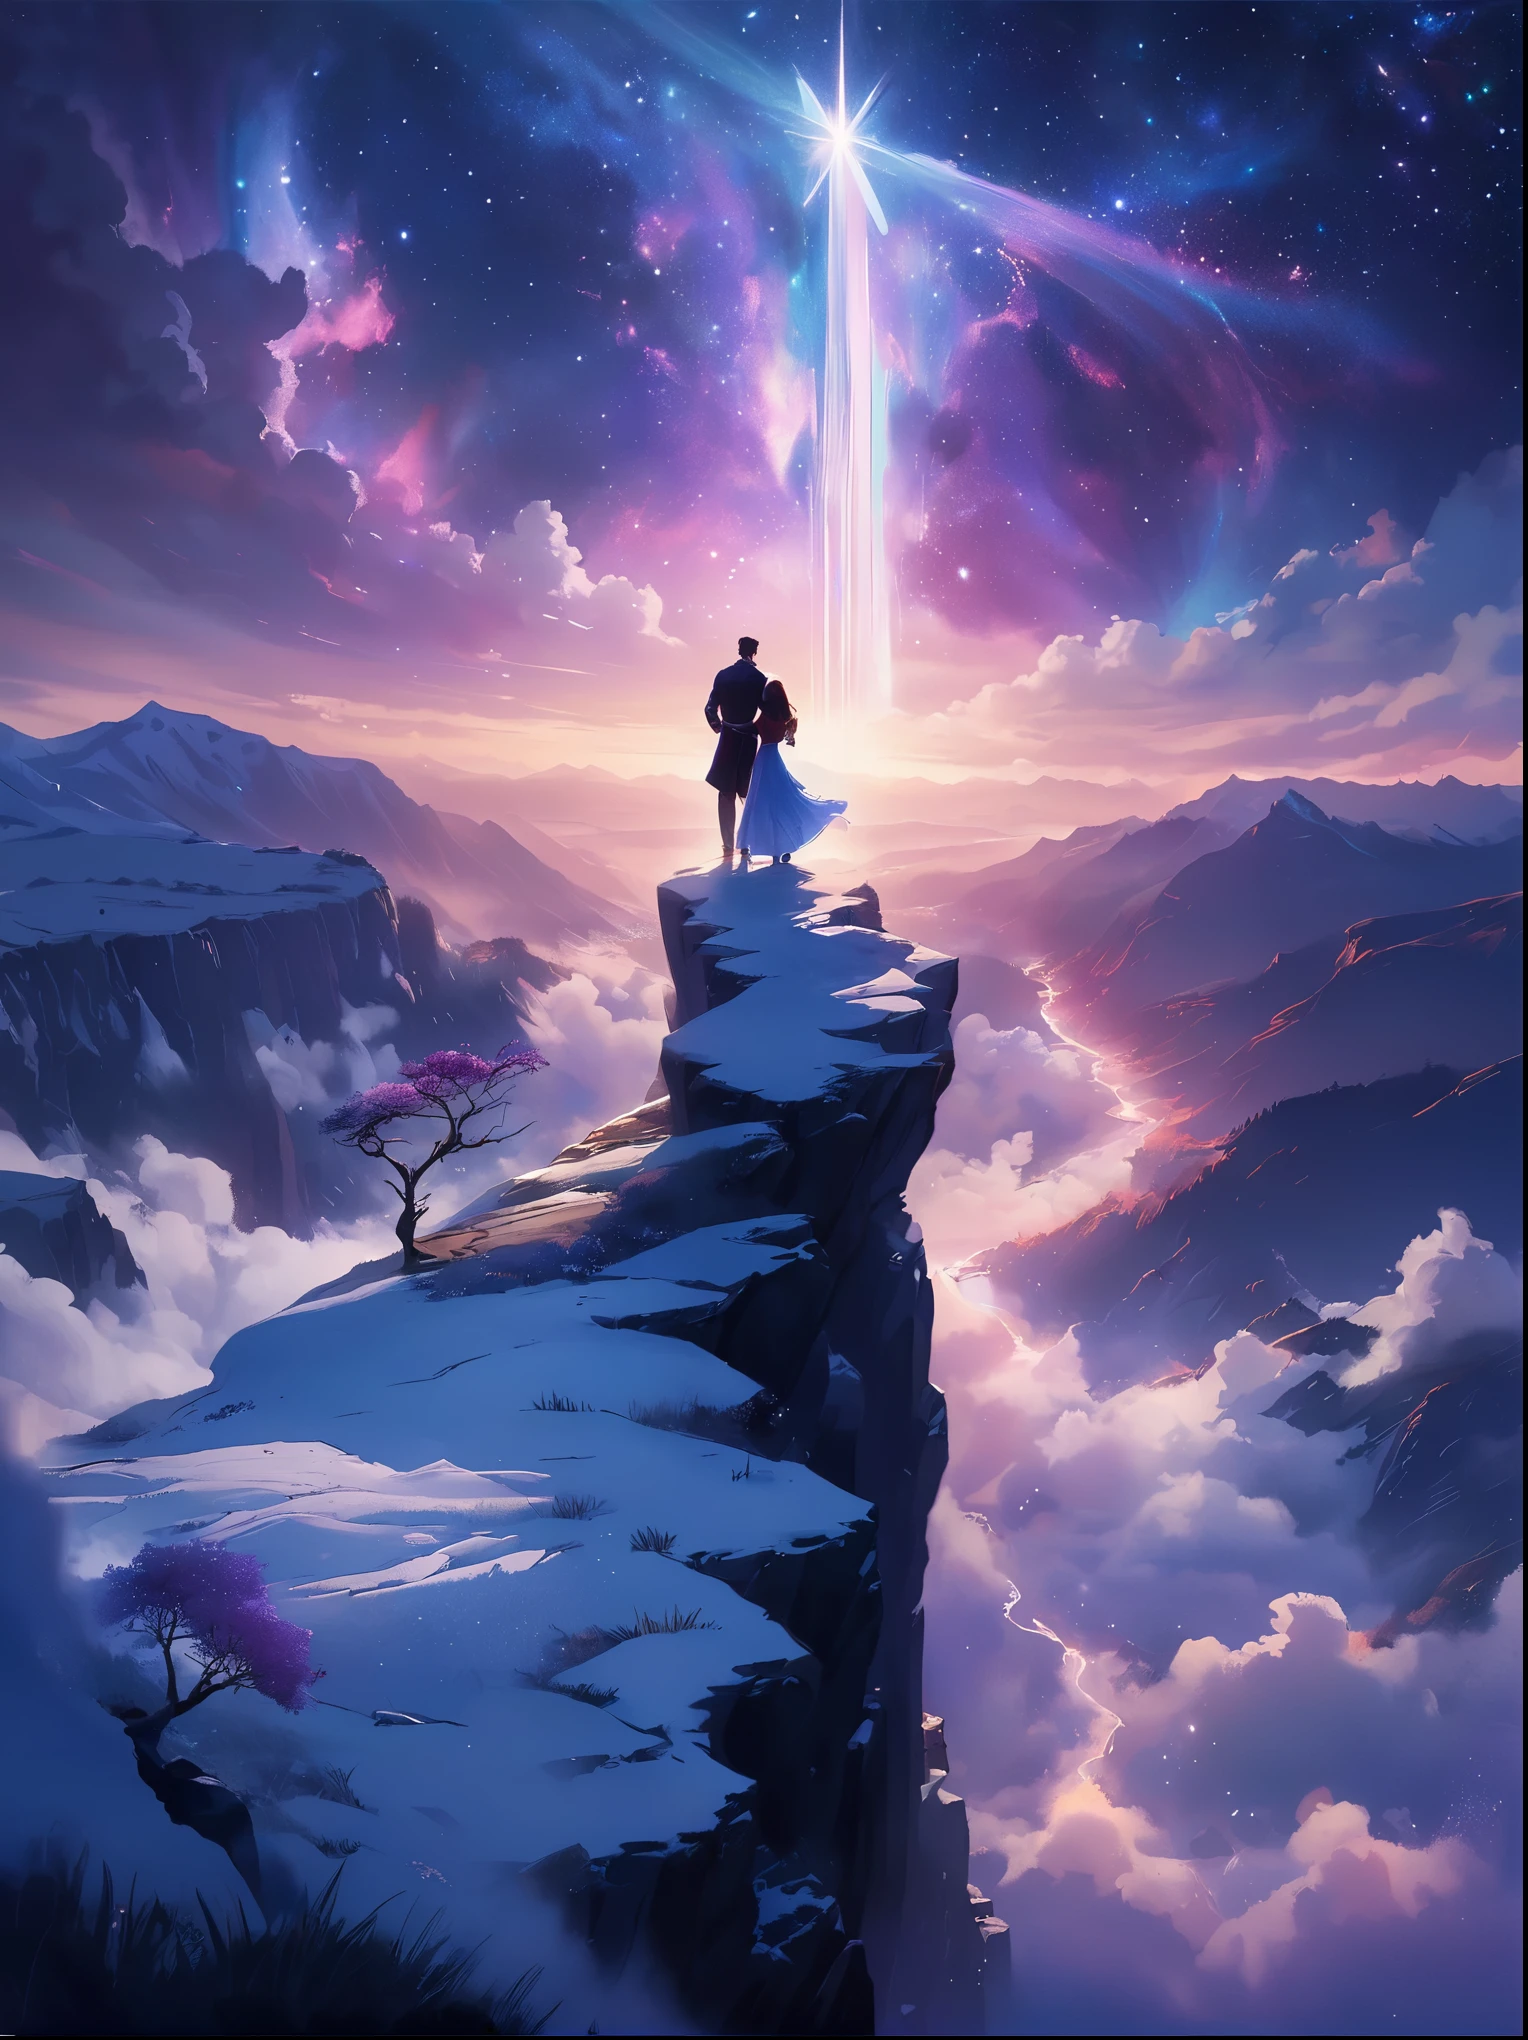 (後ろから見る)，崖の上に立つ男，夢のような中で, ぼんやりとした風景，(女の子&#39;完璧な背中)，(観客に背を向けて)，宇宙エネルギーの渦に囲まれて，ゆったりとしたローブをまとった人の後ろ姿，天流と融合する，空は深い紫と青のタペストリーです，星が点在，下の景色には、起伏のある山々がぼんやりと見える，この光景は平和で崇高だ，宇宙の雄大な自然を捉える，物思いにふける人物が畏敬の念を抱いて立っている